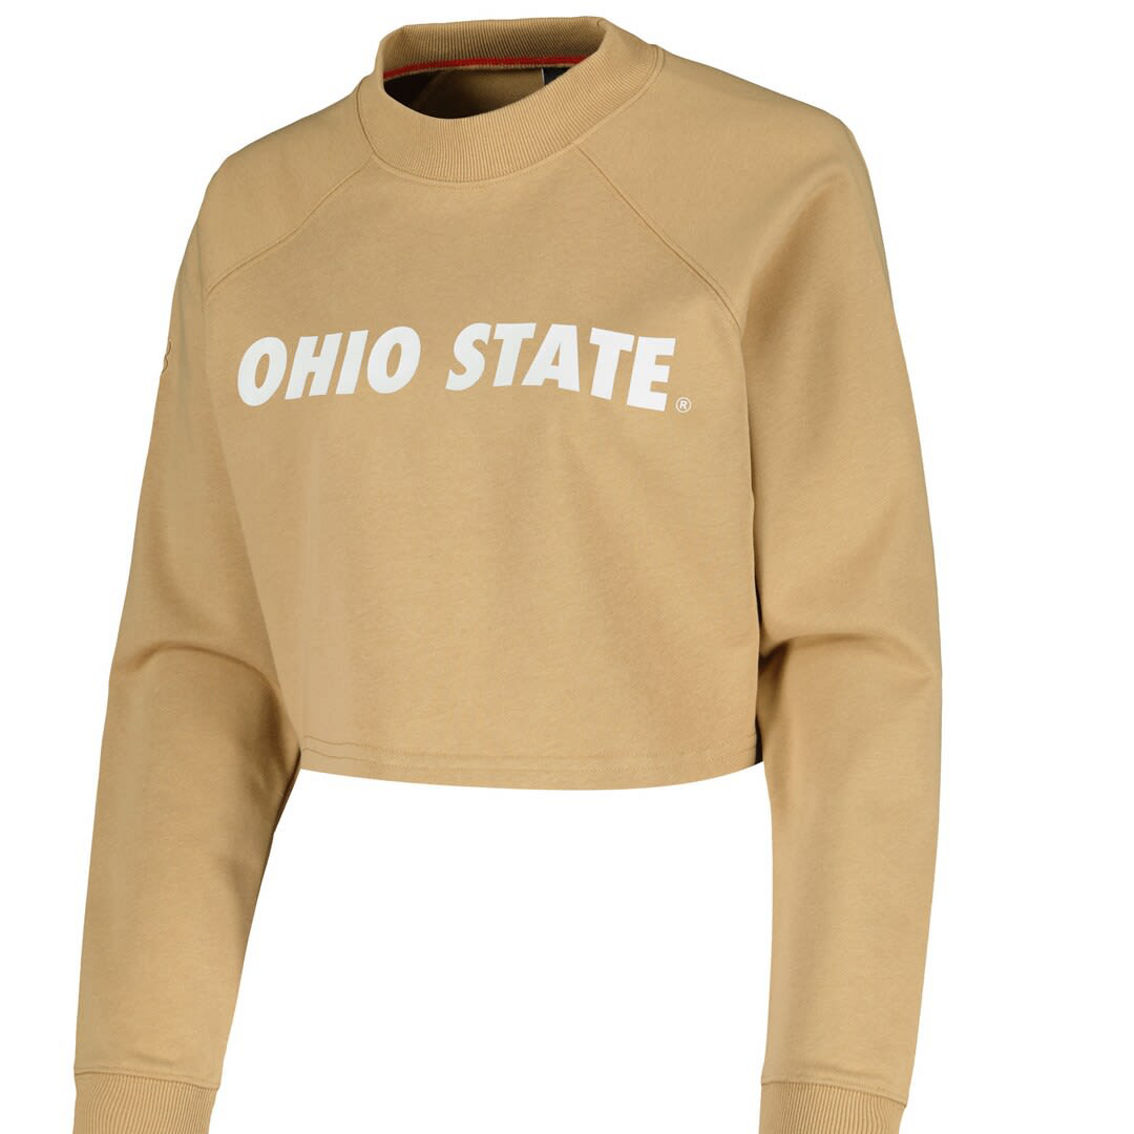 KadyLuxe Women's Tan Ohio State Buckeyes Raglan Cropped Sweatshirt & Sweatpants Set - Image 3 of 4